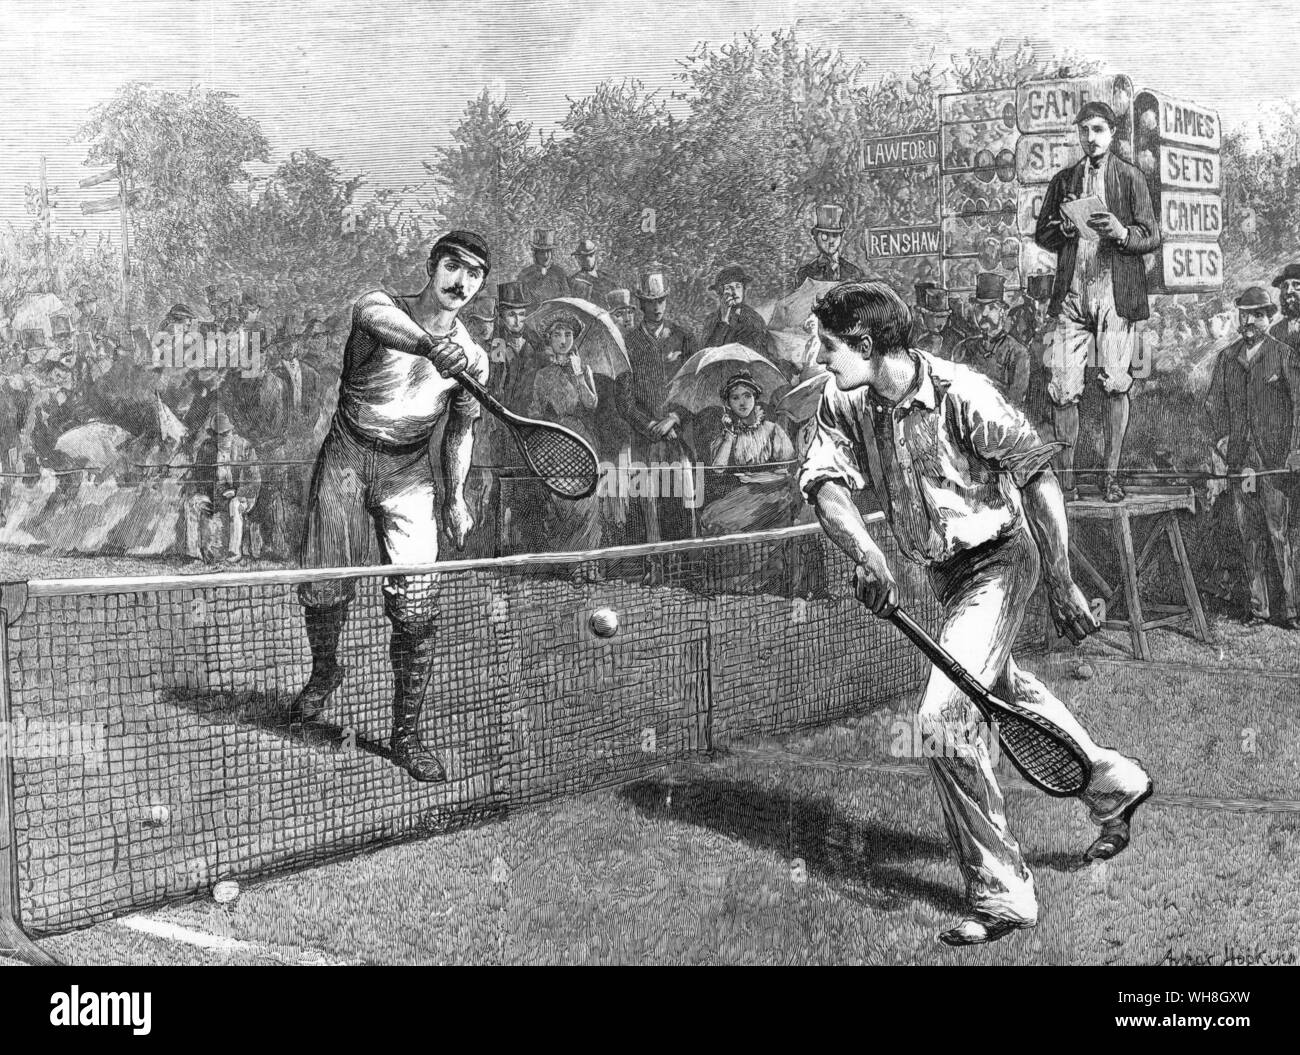 Die fünfte Runde des alle Ankömmlinge Match in Wimbledon 1881. W Renshaw beat Lawford beachten Sie die Abacus Anzeiger die Enzyklopädie von Tennis Seite 25. Stockfoto